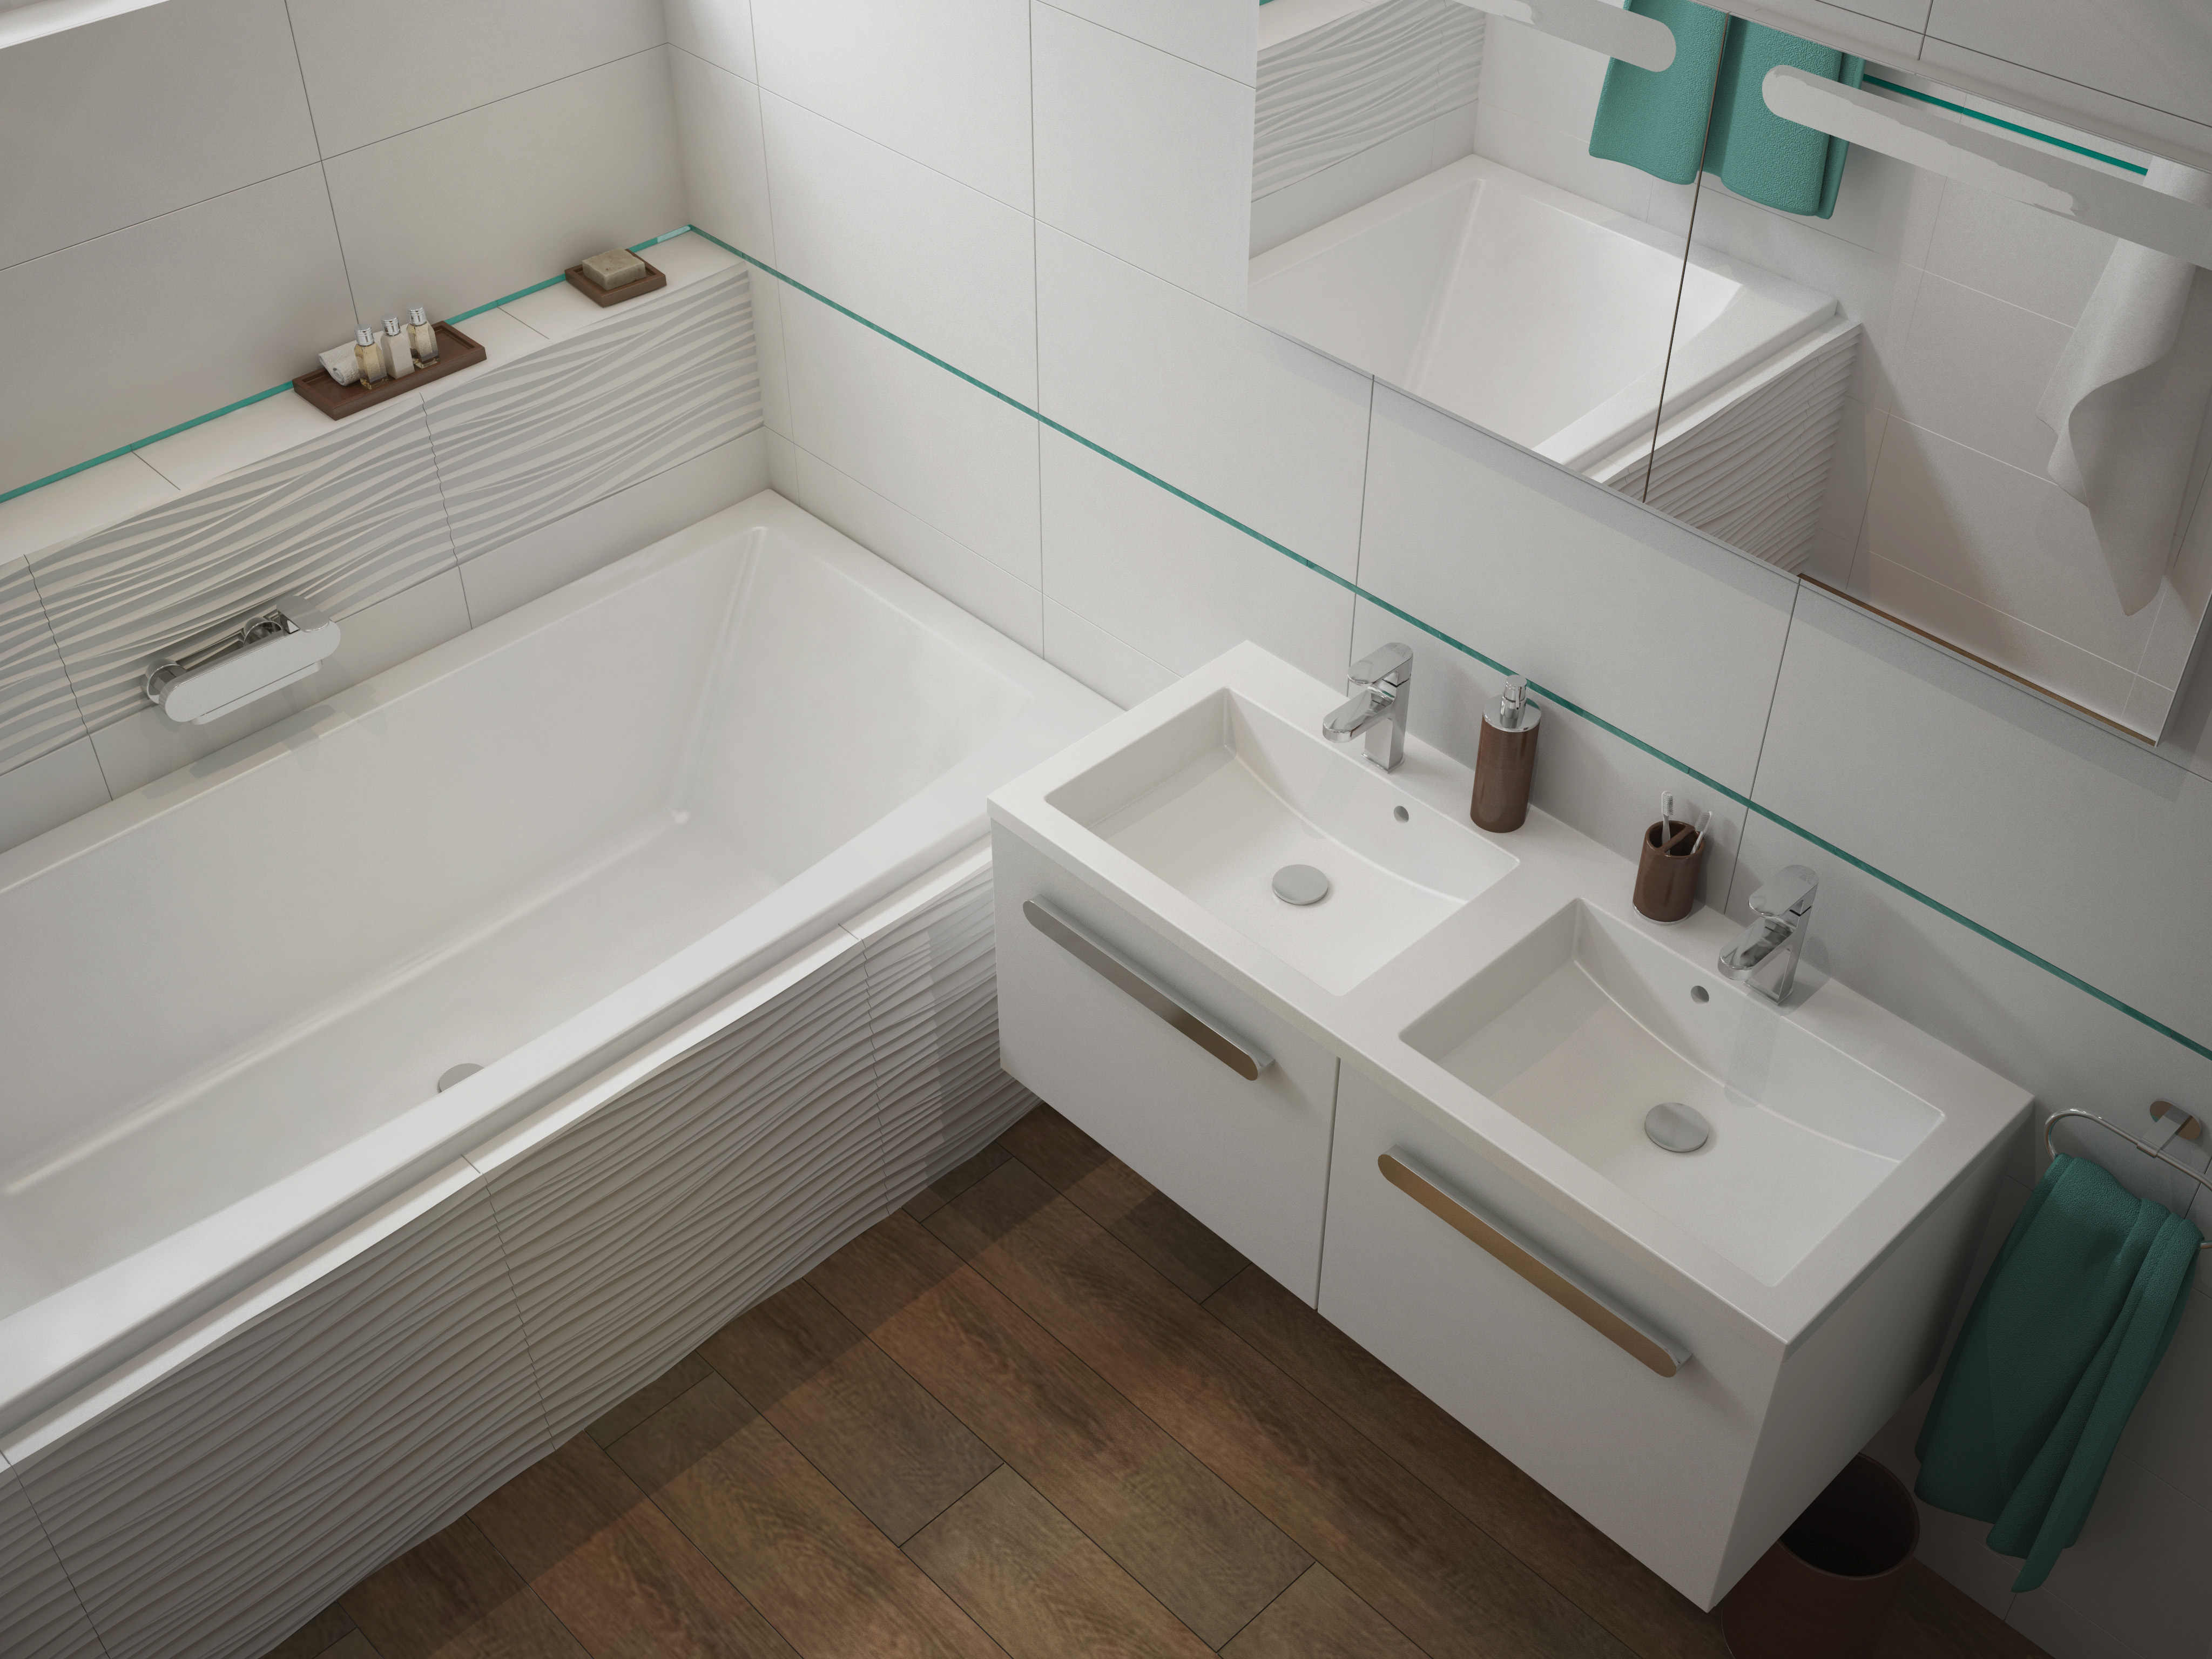 A Comfort fürdőszobai duplamosdó határozottabb, vastag peremrészei megbízható megjelenést kölcsönöz a szaniternek, ráadásul jól illeszkednek más fürdőszoba berendezéshez is.